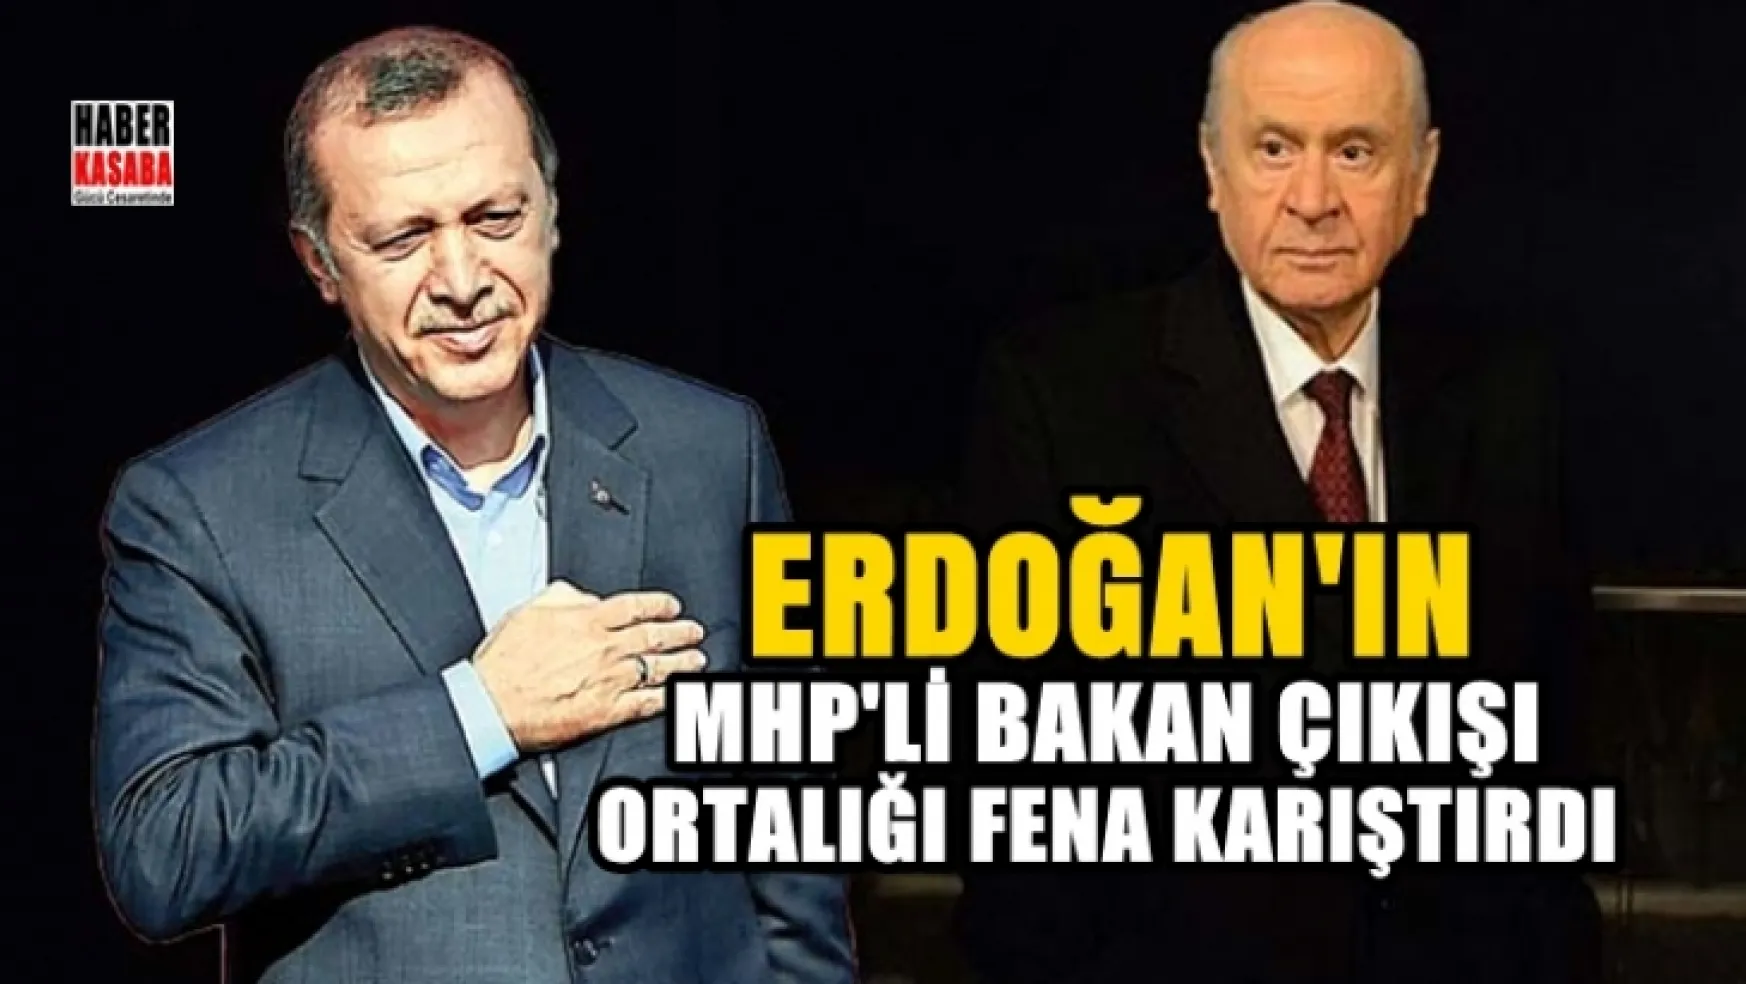 Erdoğan'ın 'MHP'li bakan çıkışı' kulisleri hareketlendirdi